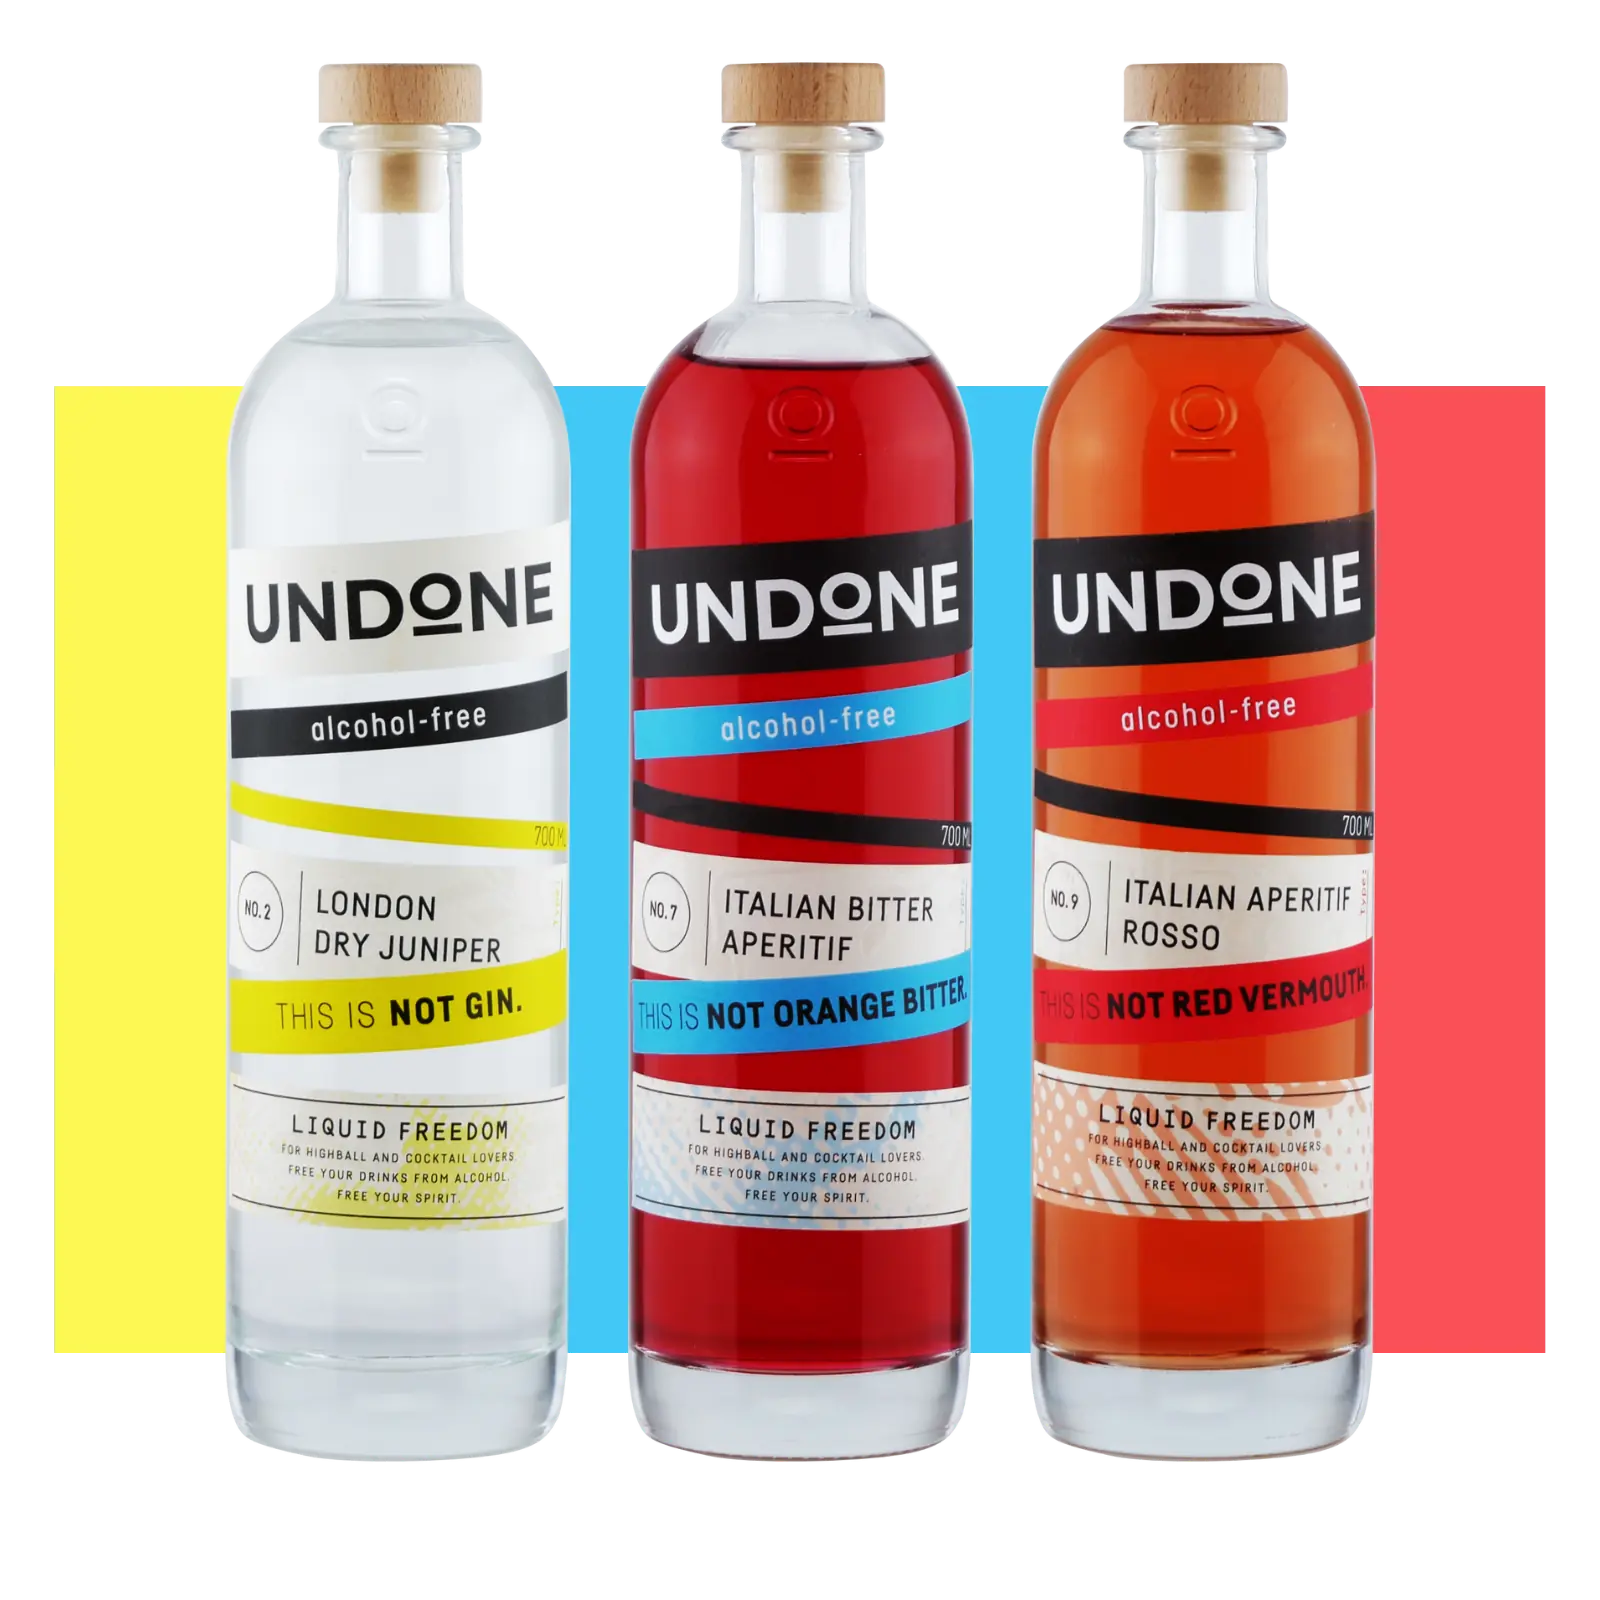 Drei Flaschen Undone Negroni Bundle, London Dry Junioer, Italian Bitter Aperitif und Italian Aperitif Rosso